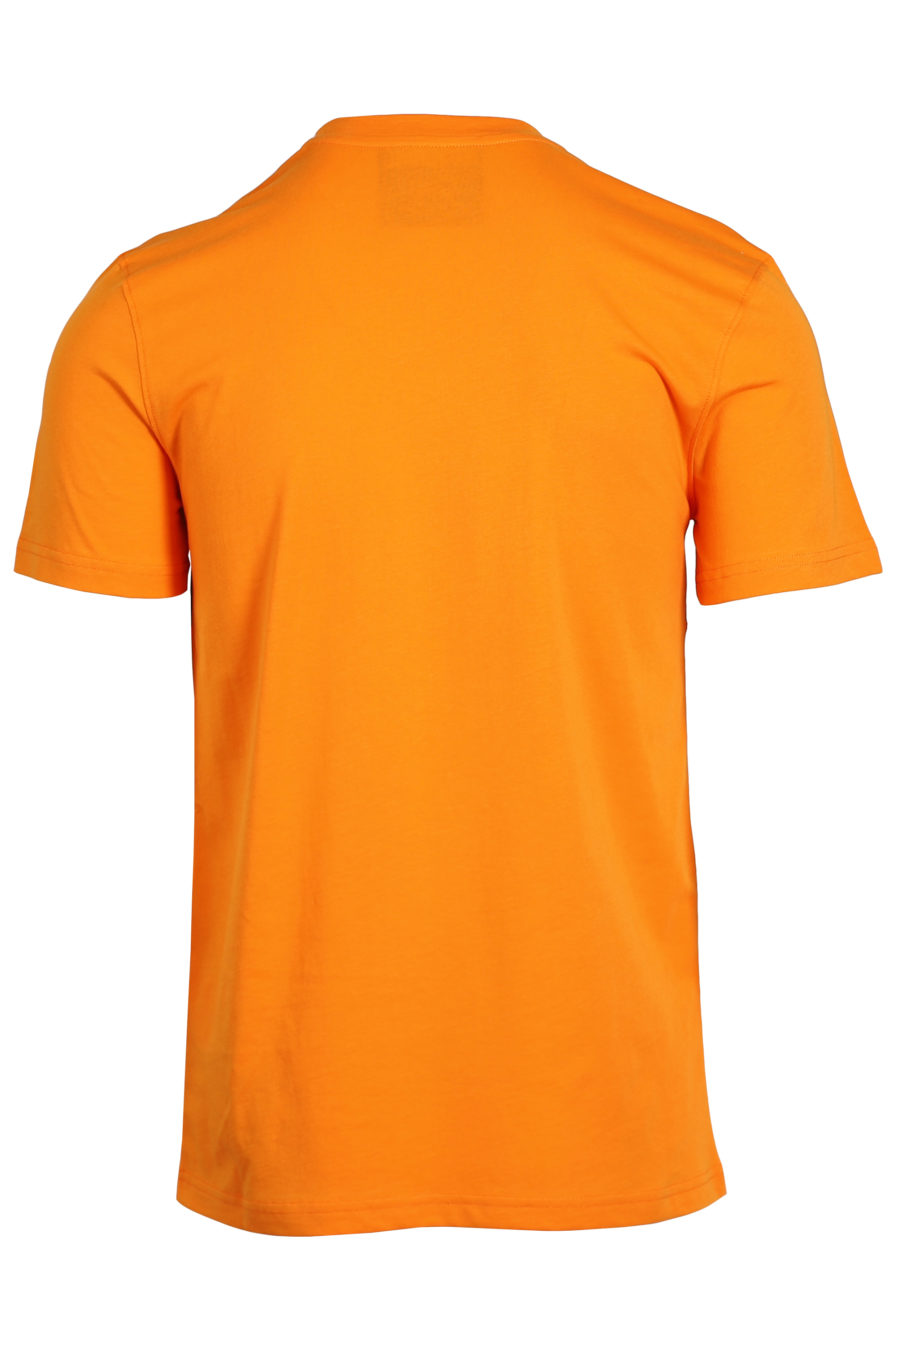 T-shirt orange logo schwarz und weiß - IMG 0980